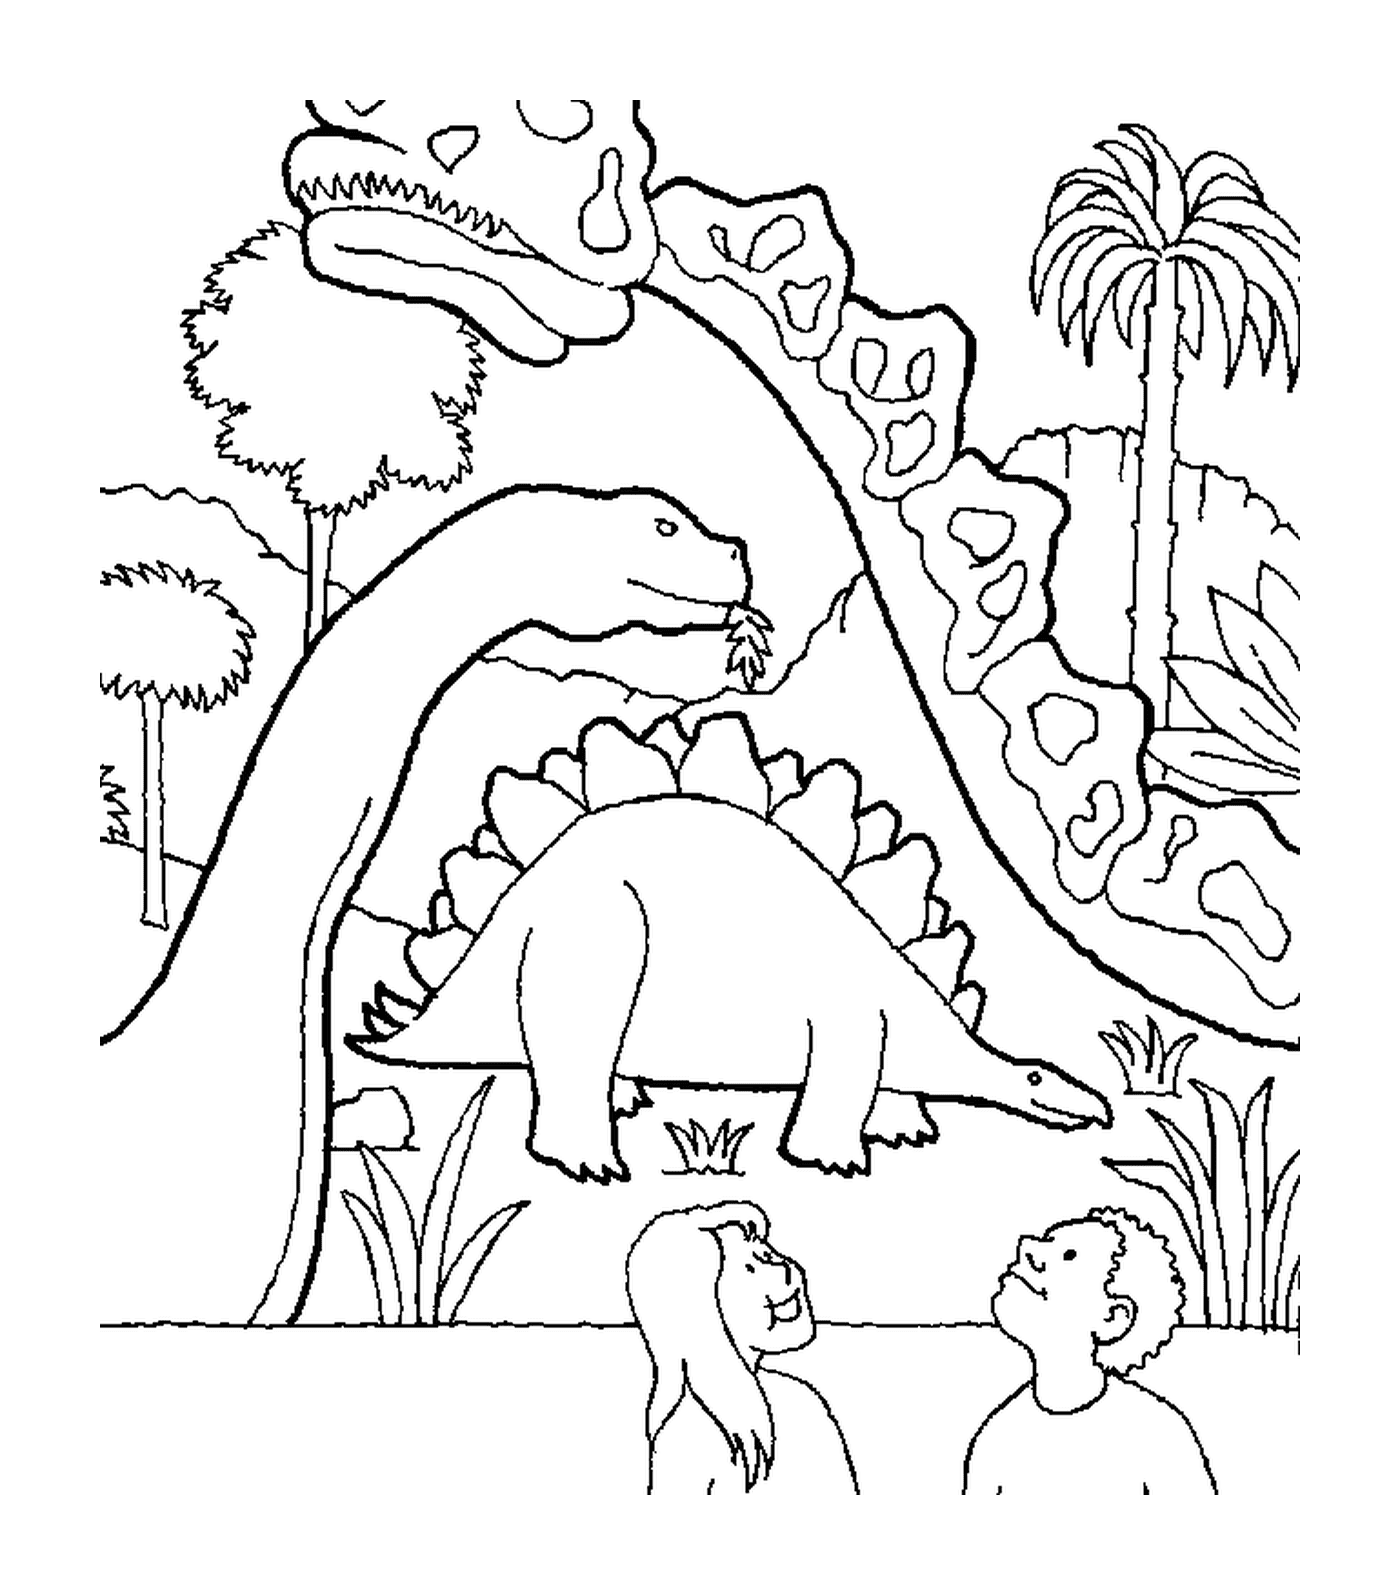  Dinosauro circondato da altri due dinosauri 